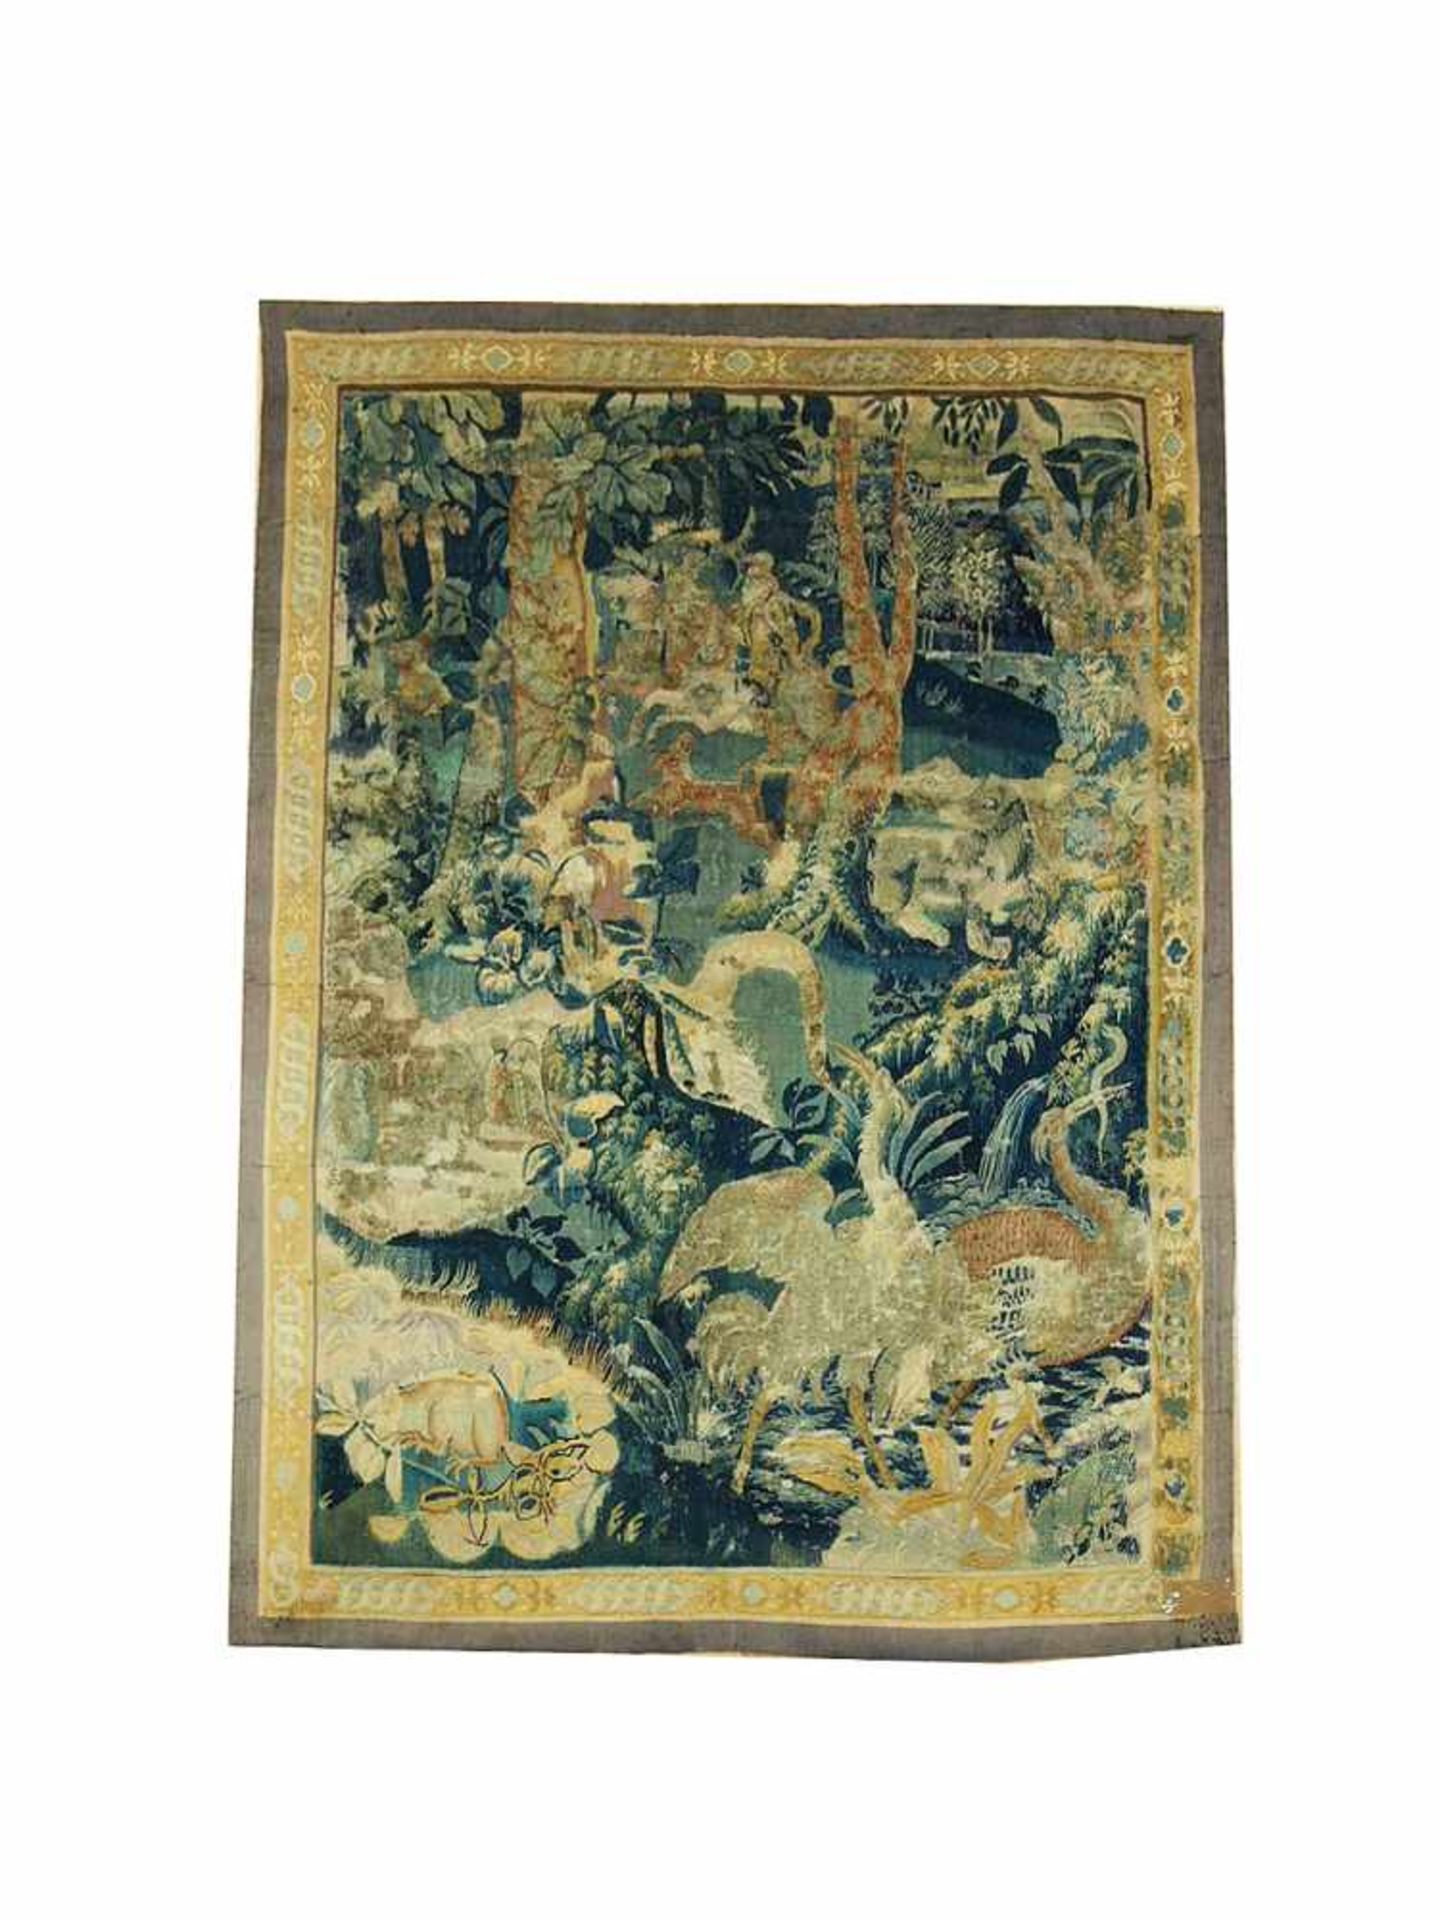 Tapisserie Wildgarten mit Jäger, Flämisch, um 1600, 203 x 150 cm, Zustand D